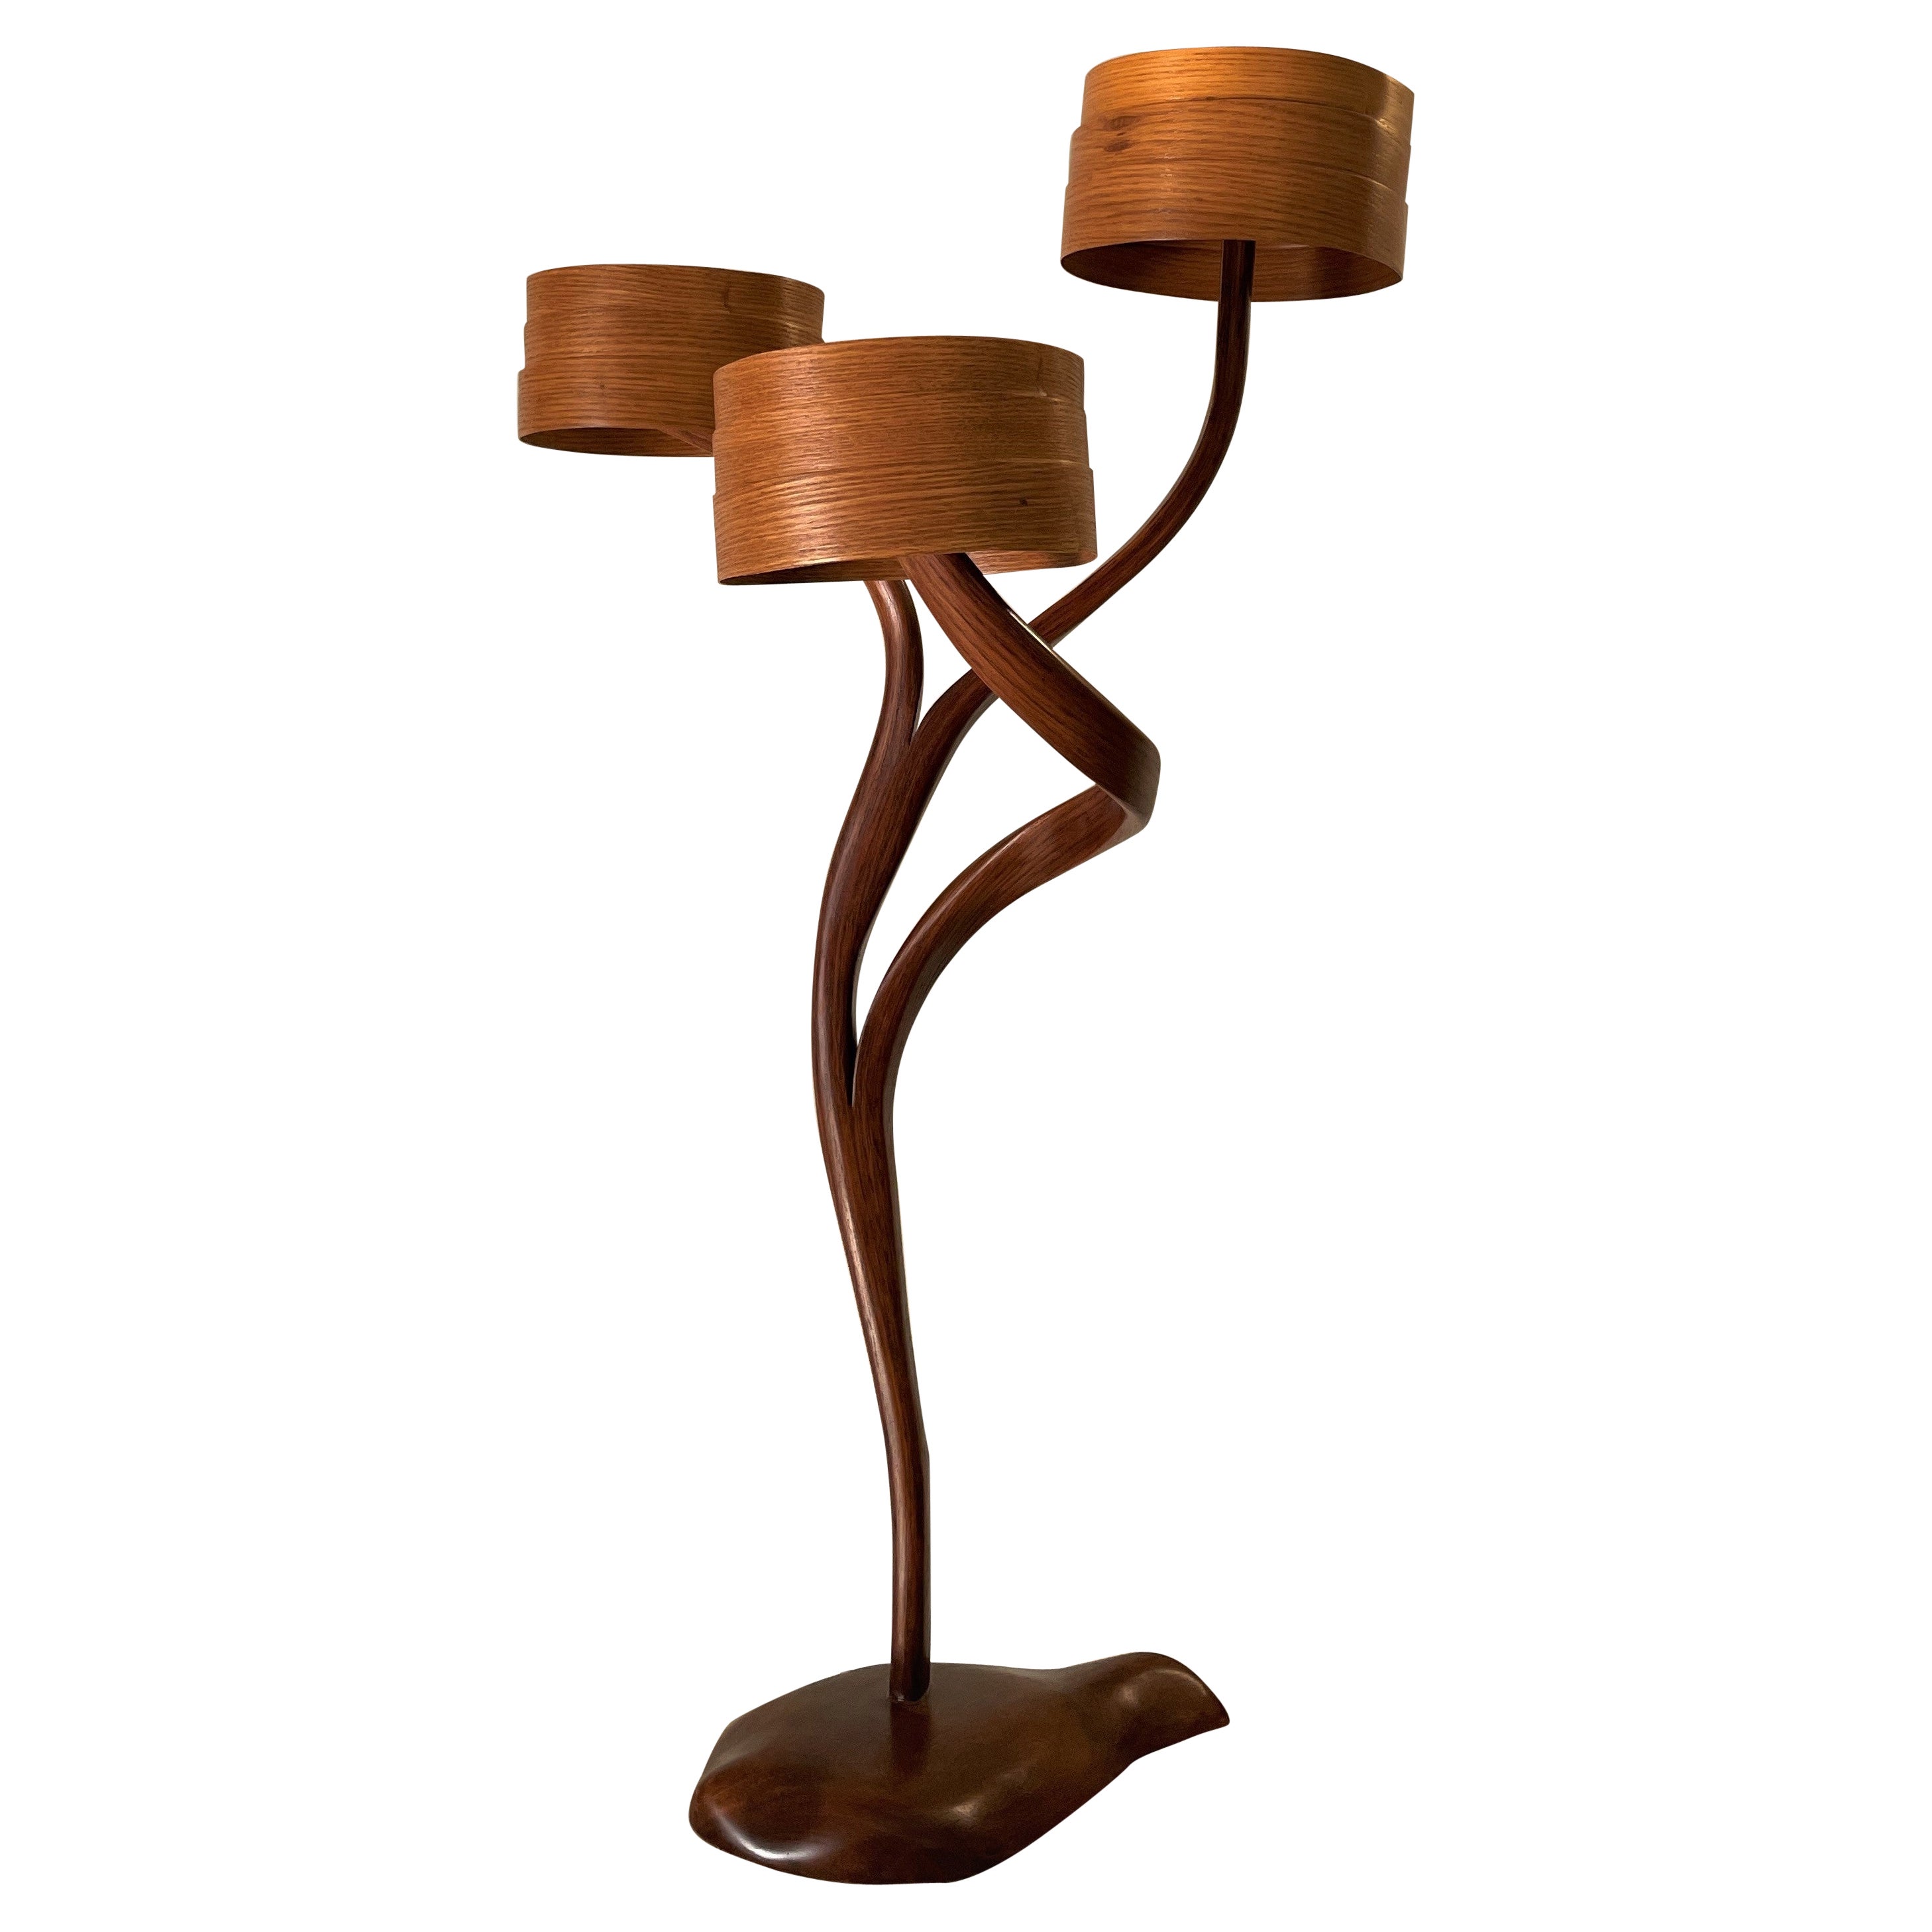 Side Lamp No. 3 - Vrksa Series, by Raka Studio